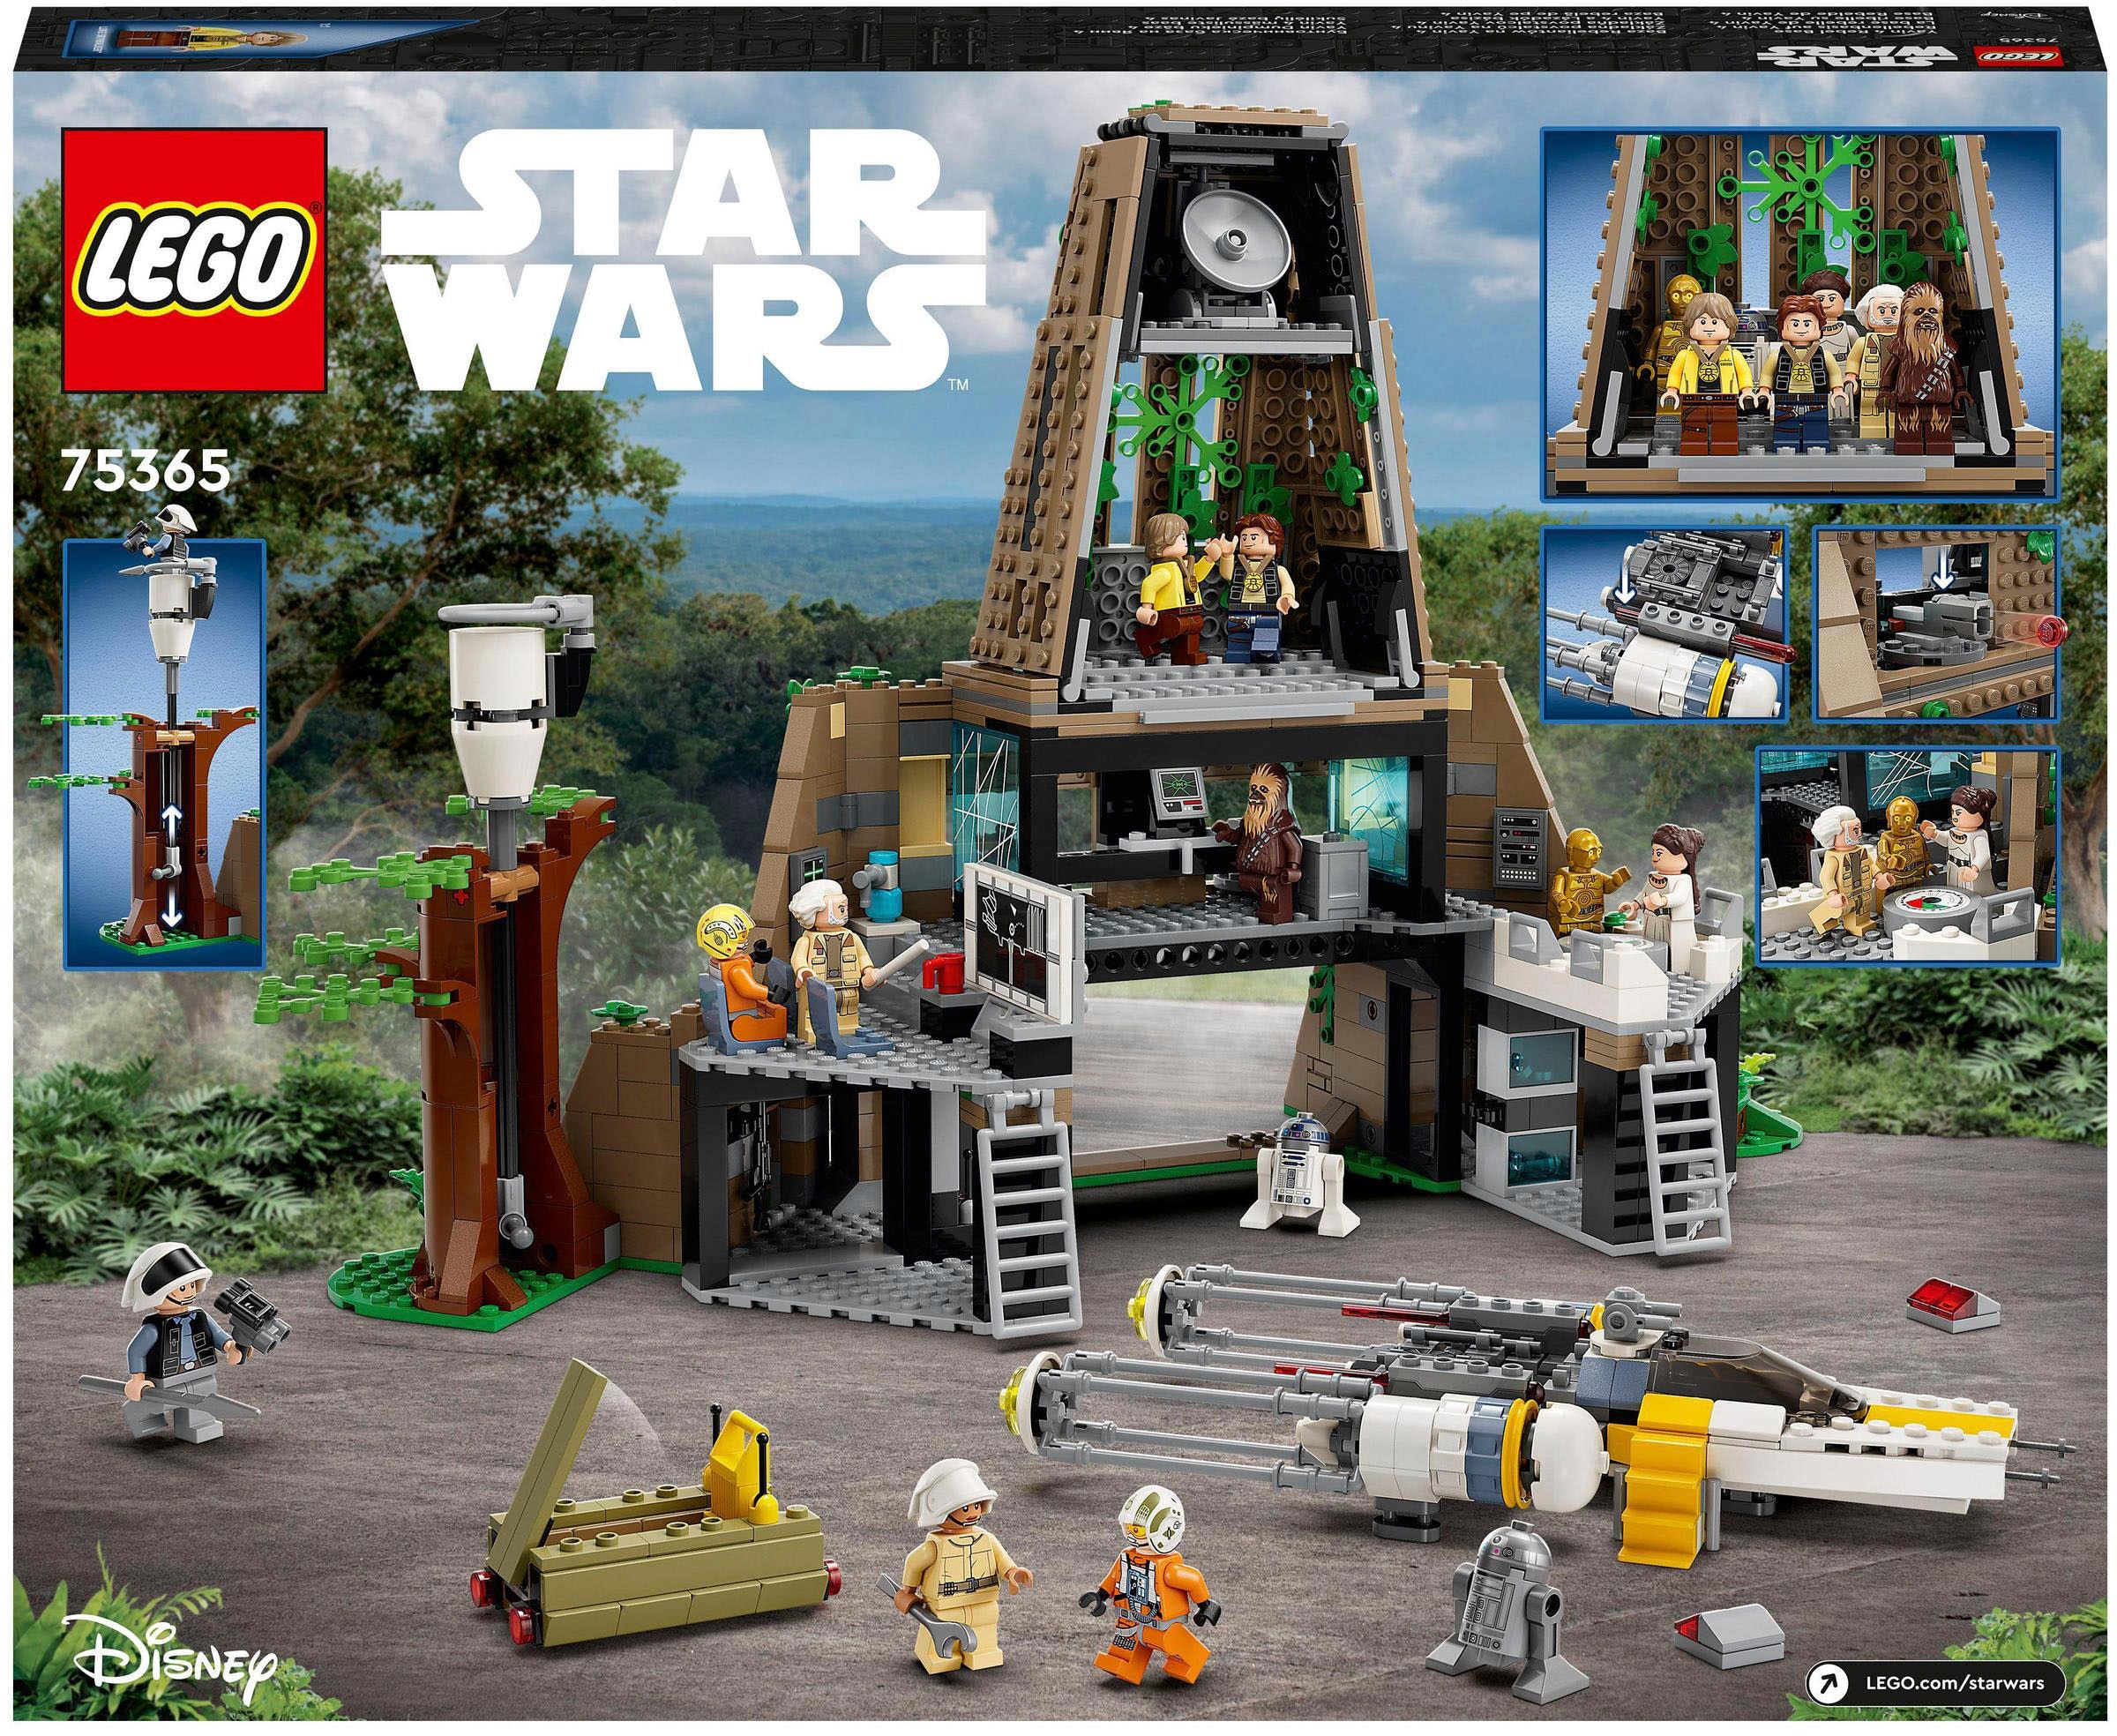 LEGO® Konstruktionsspielsteine »Rebellenbasis auf Yavin 4 (75365), LEGO® Star Wars«, (1066 St.), Made in Europe